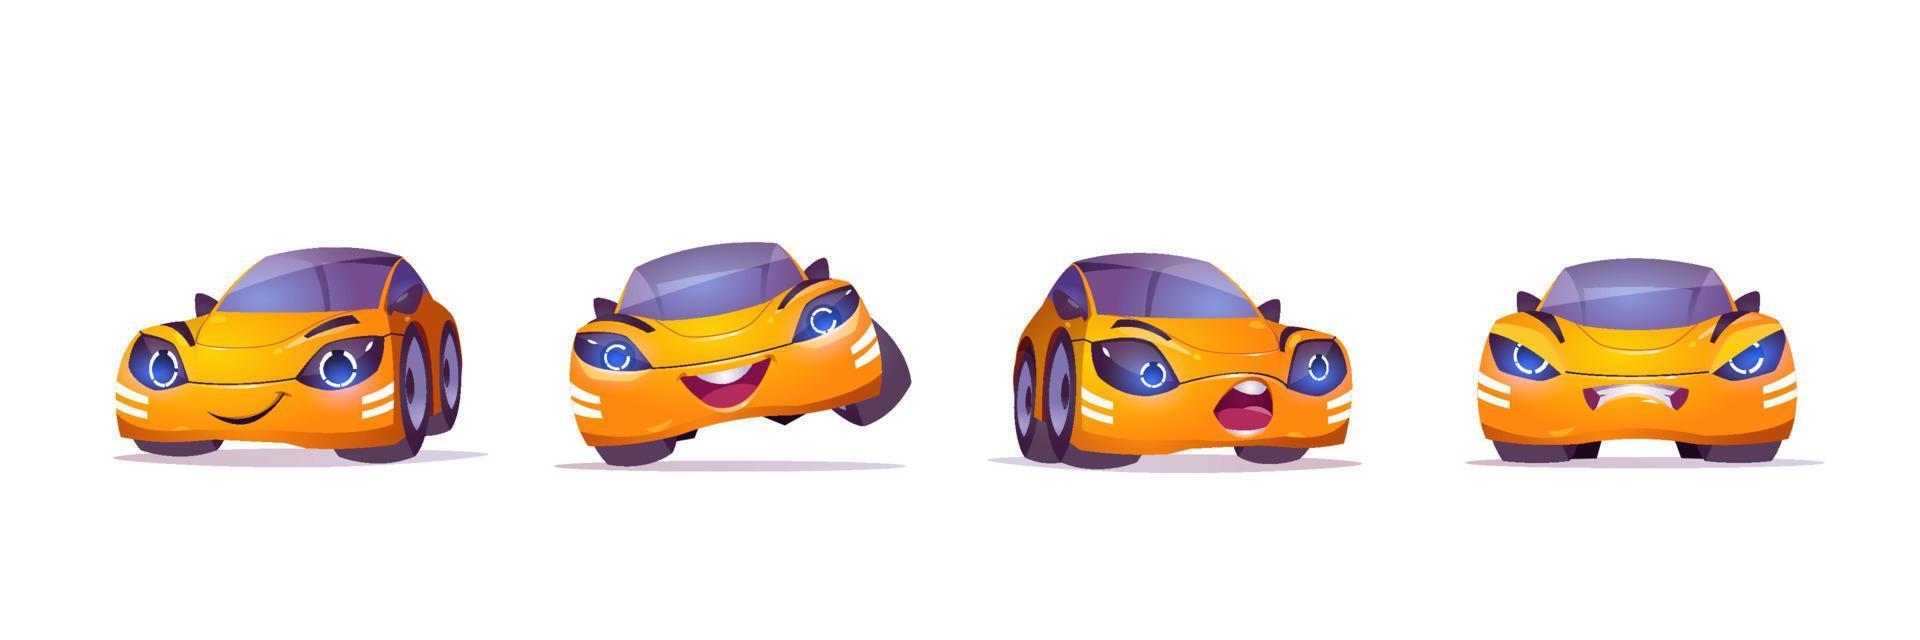 söt gul bil karaktär i annorlunda poser vektor